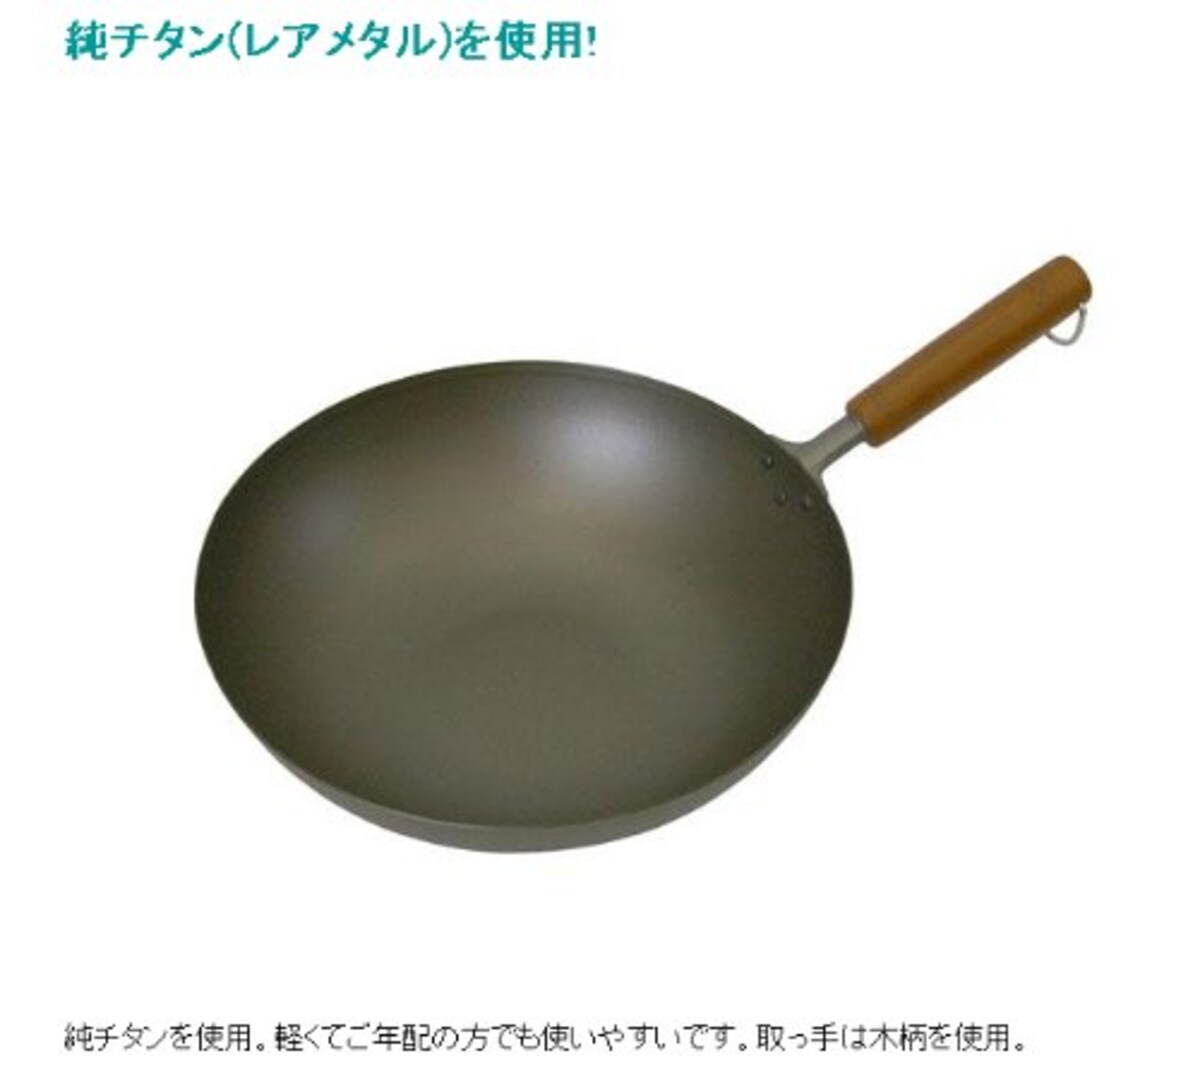  タフコ(Tafuco) 炒め鍋 深型 フライパン 30cm ガス火専用 純チタン 長谷元 日本製 AIT1230画像2 